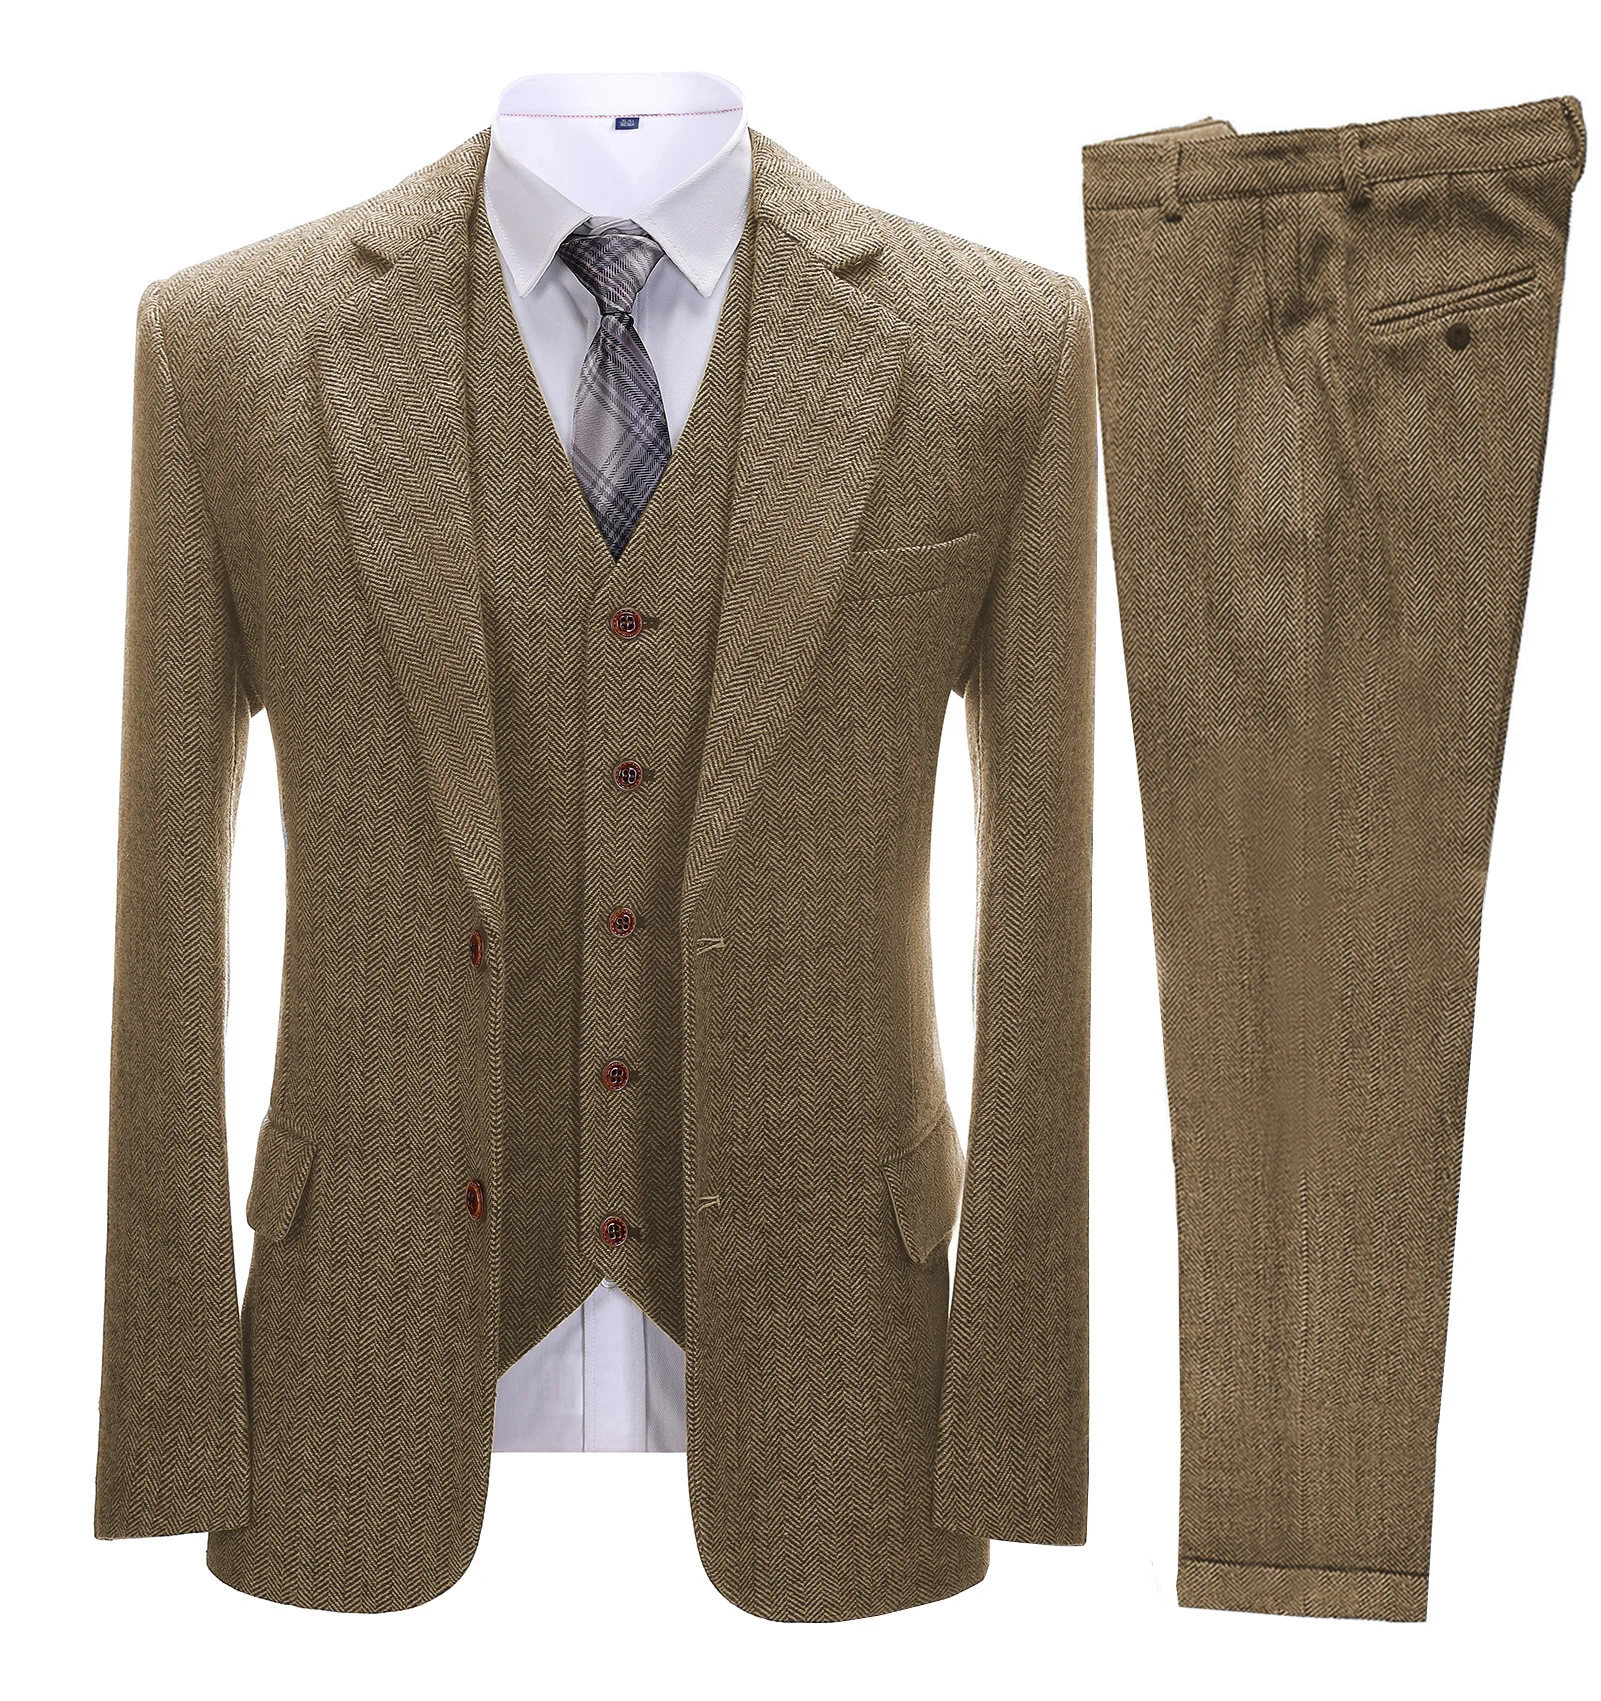 Brown Men's Vintage Suits 3 Pieces Latest Coat Designs Herringbone Tweed Tuxedo Winter Formal Wedding Suits (Blazer+Vest+Pants)